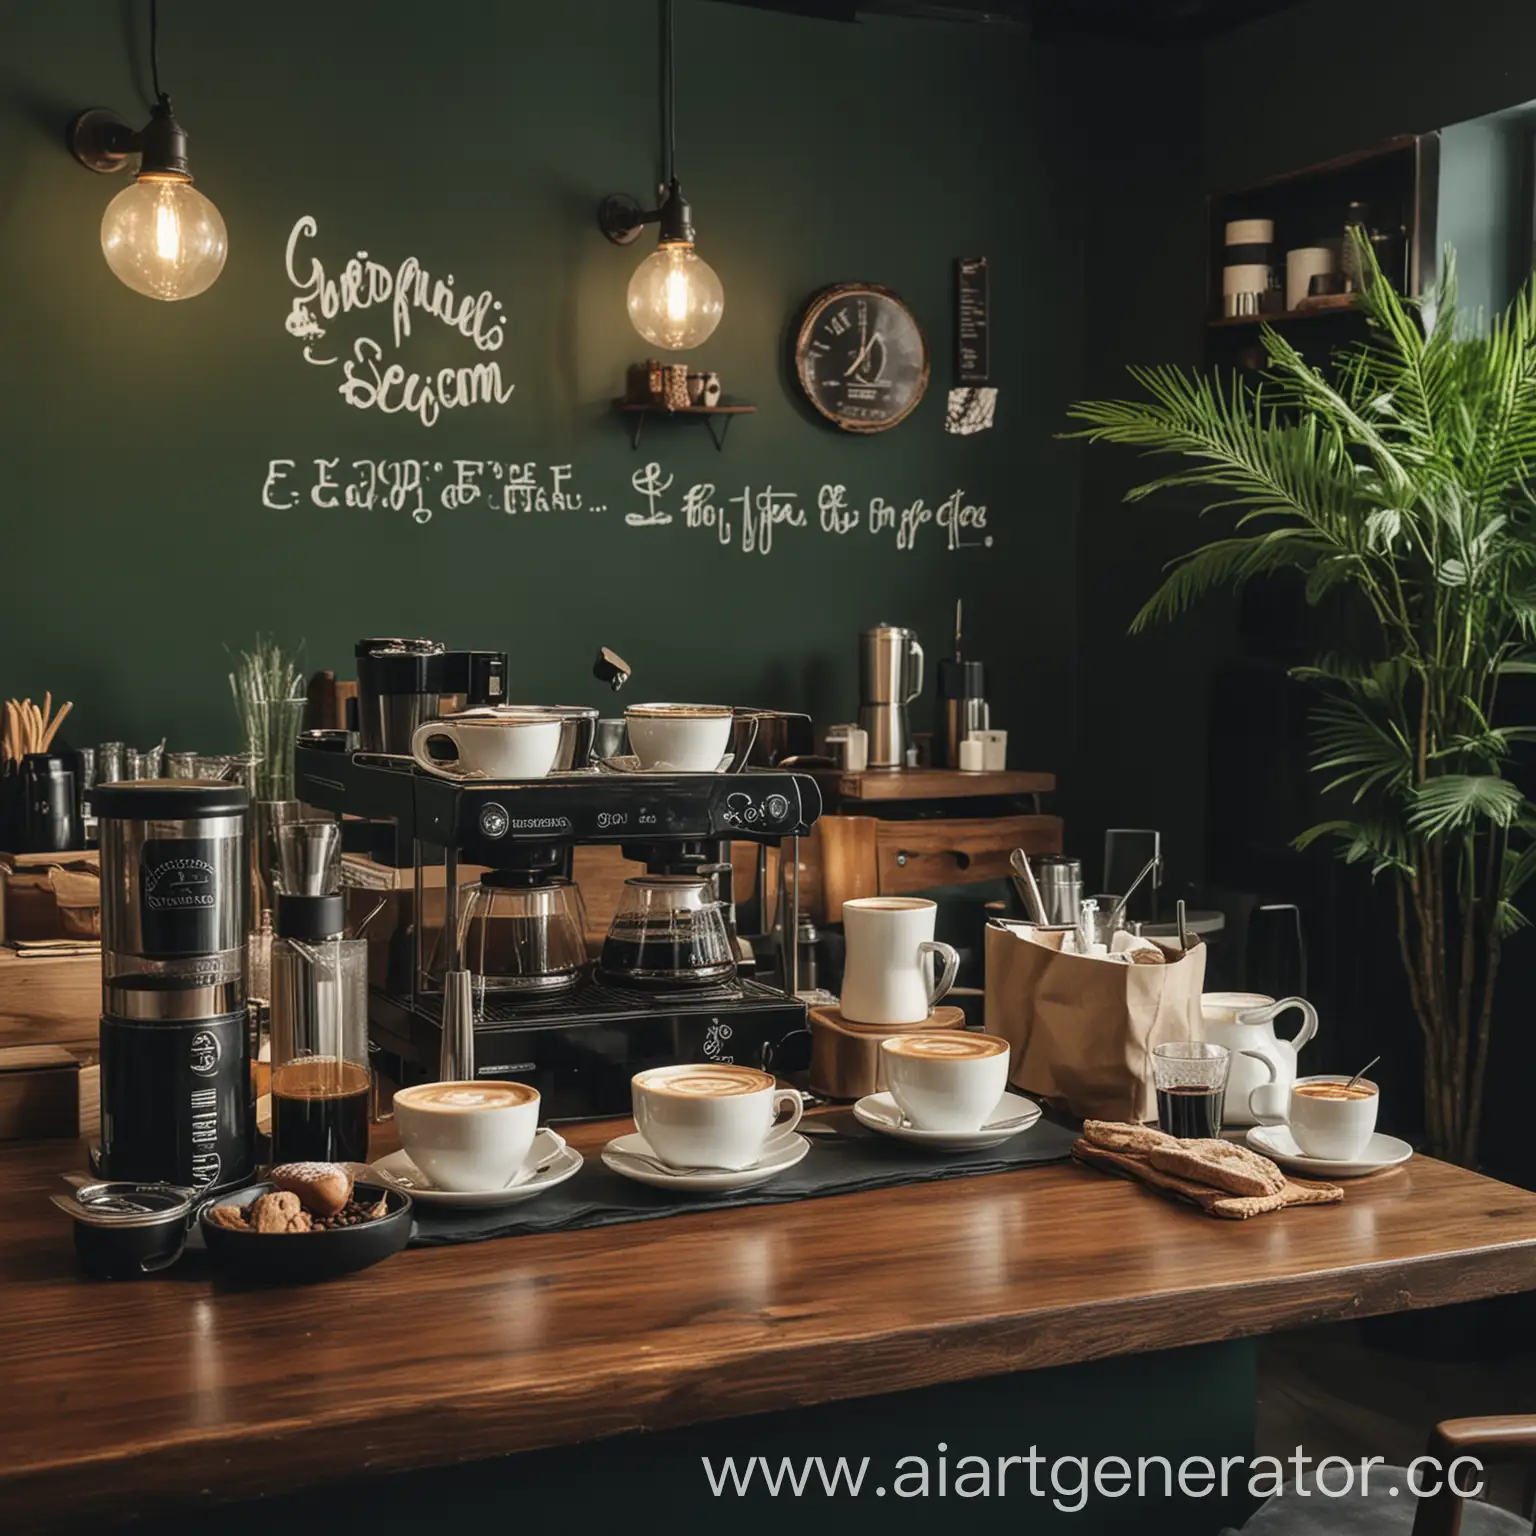 Дегустация кофе в кофейне, которая выполнена в темно-зеленых тонах 